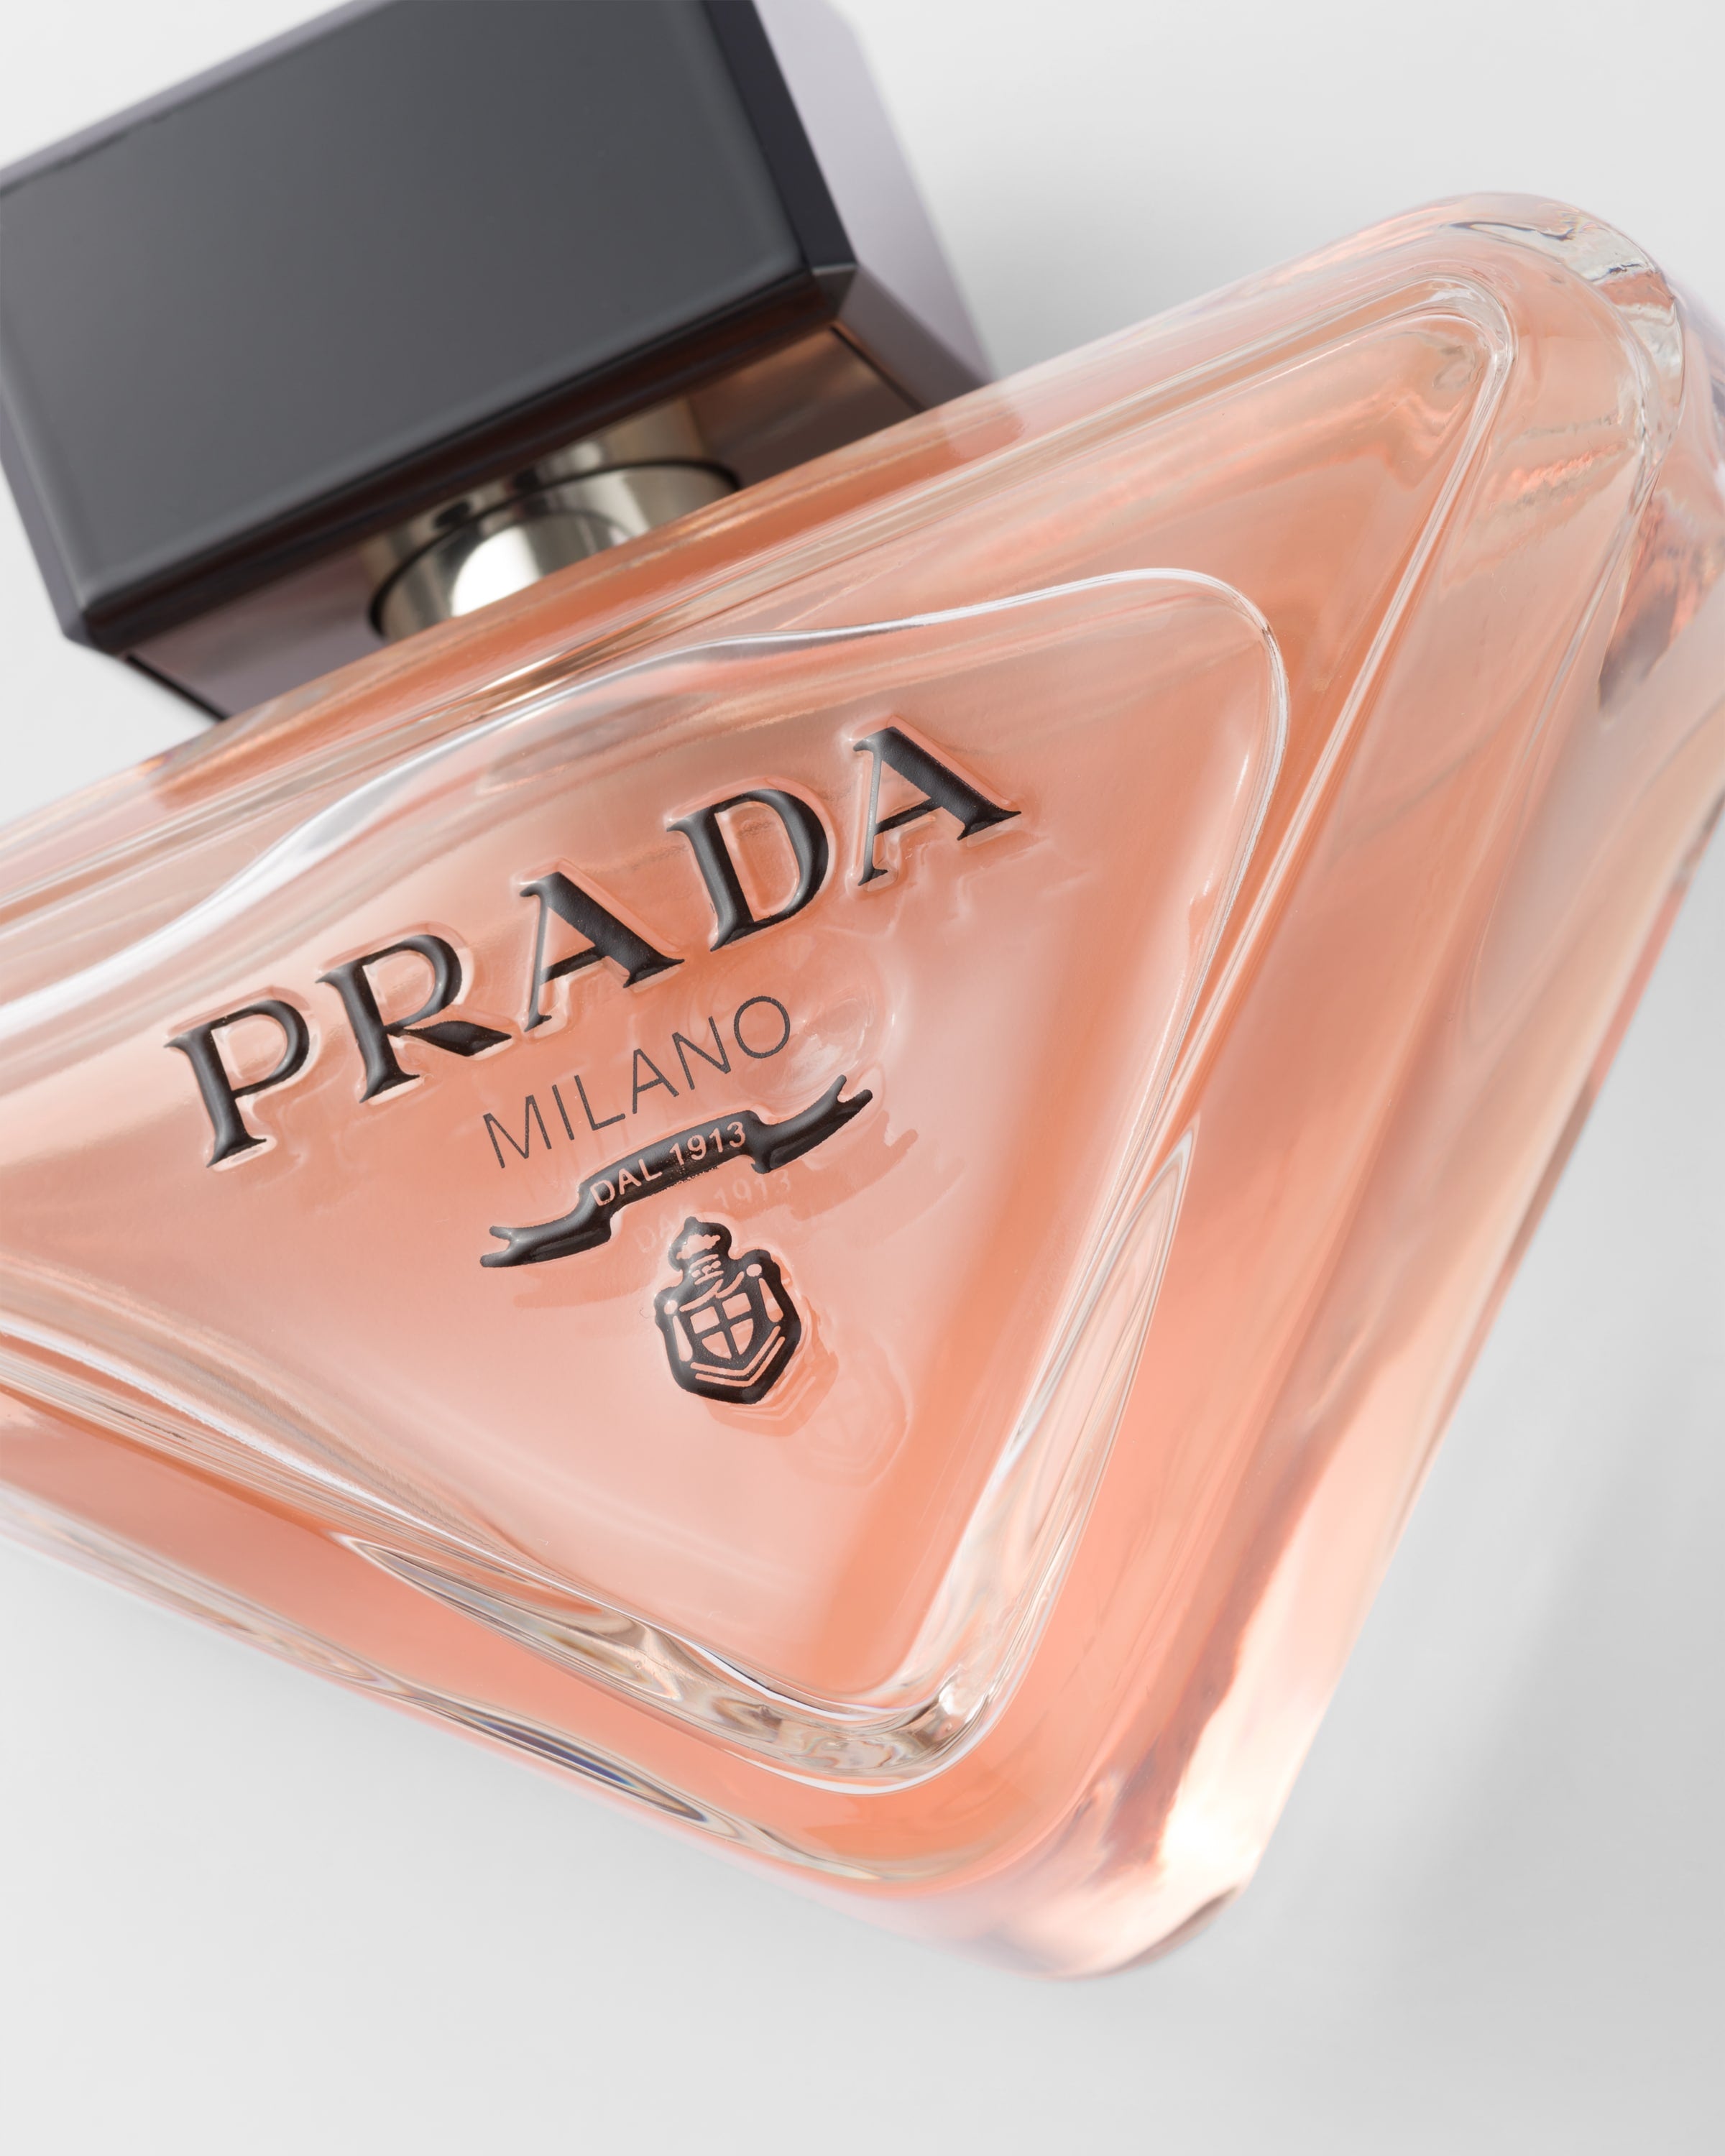 Nước Hoa PRADA Paradoxe Eau de Parfum #90 mL